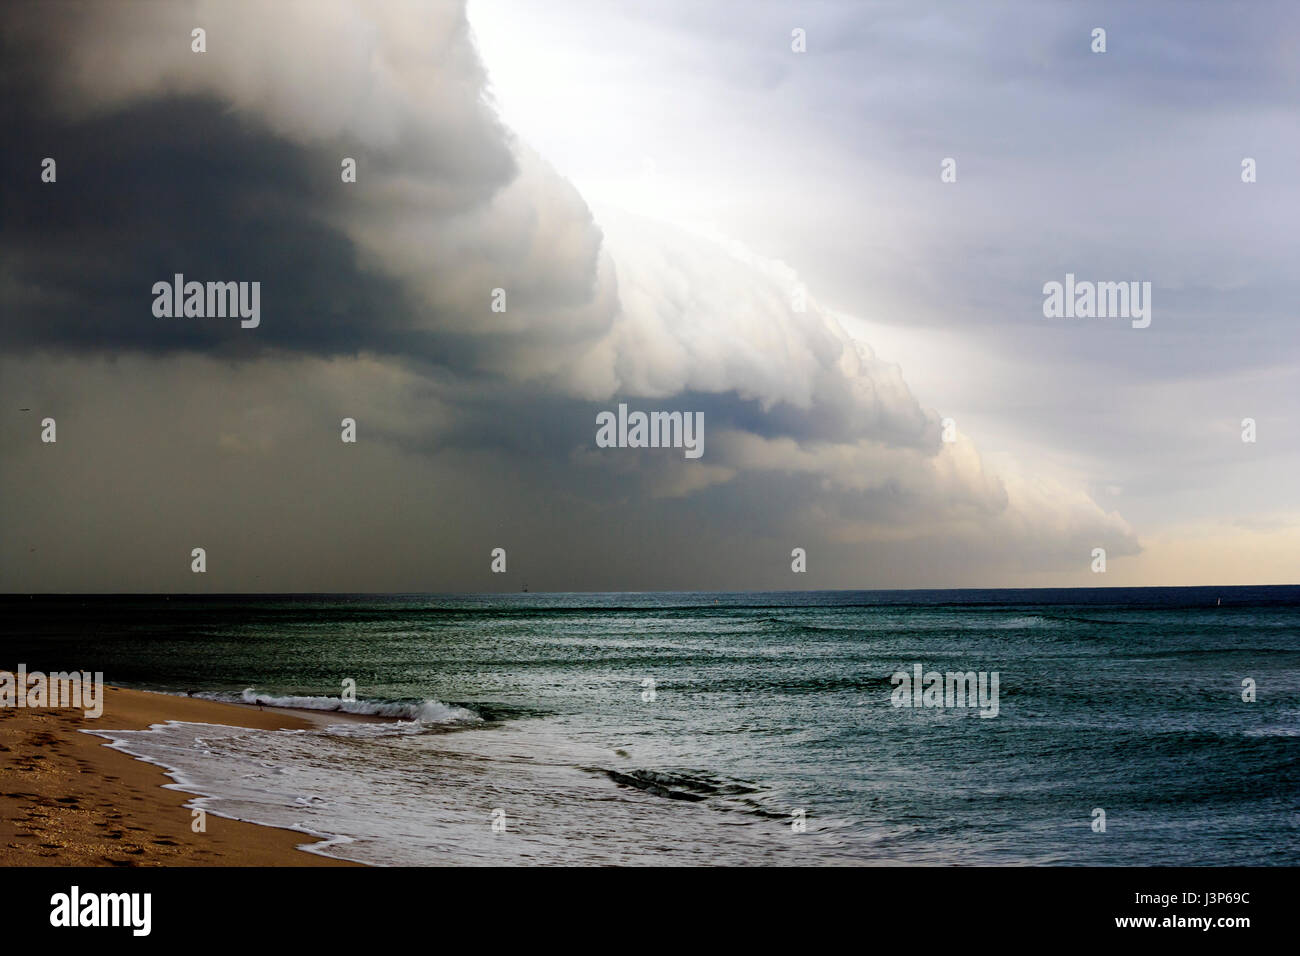 Miami Beach Florida,Oceano Atlantico,acqua,fronte freddo,tempo,nuvole,grigio,spiaggia,pioggia,tempesta,cielo,onde,acqua,FL081203051 Foto Stock